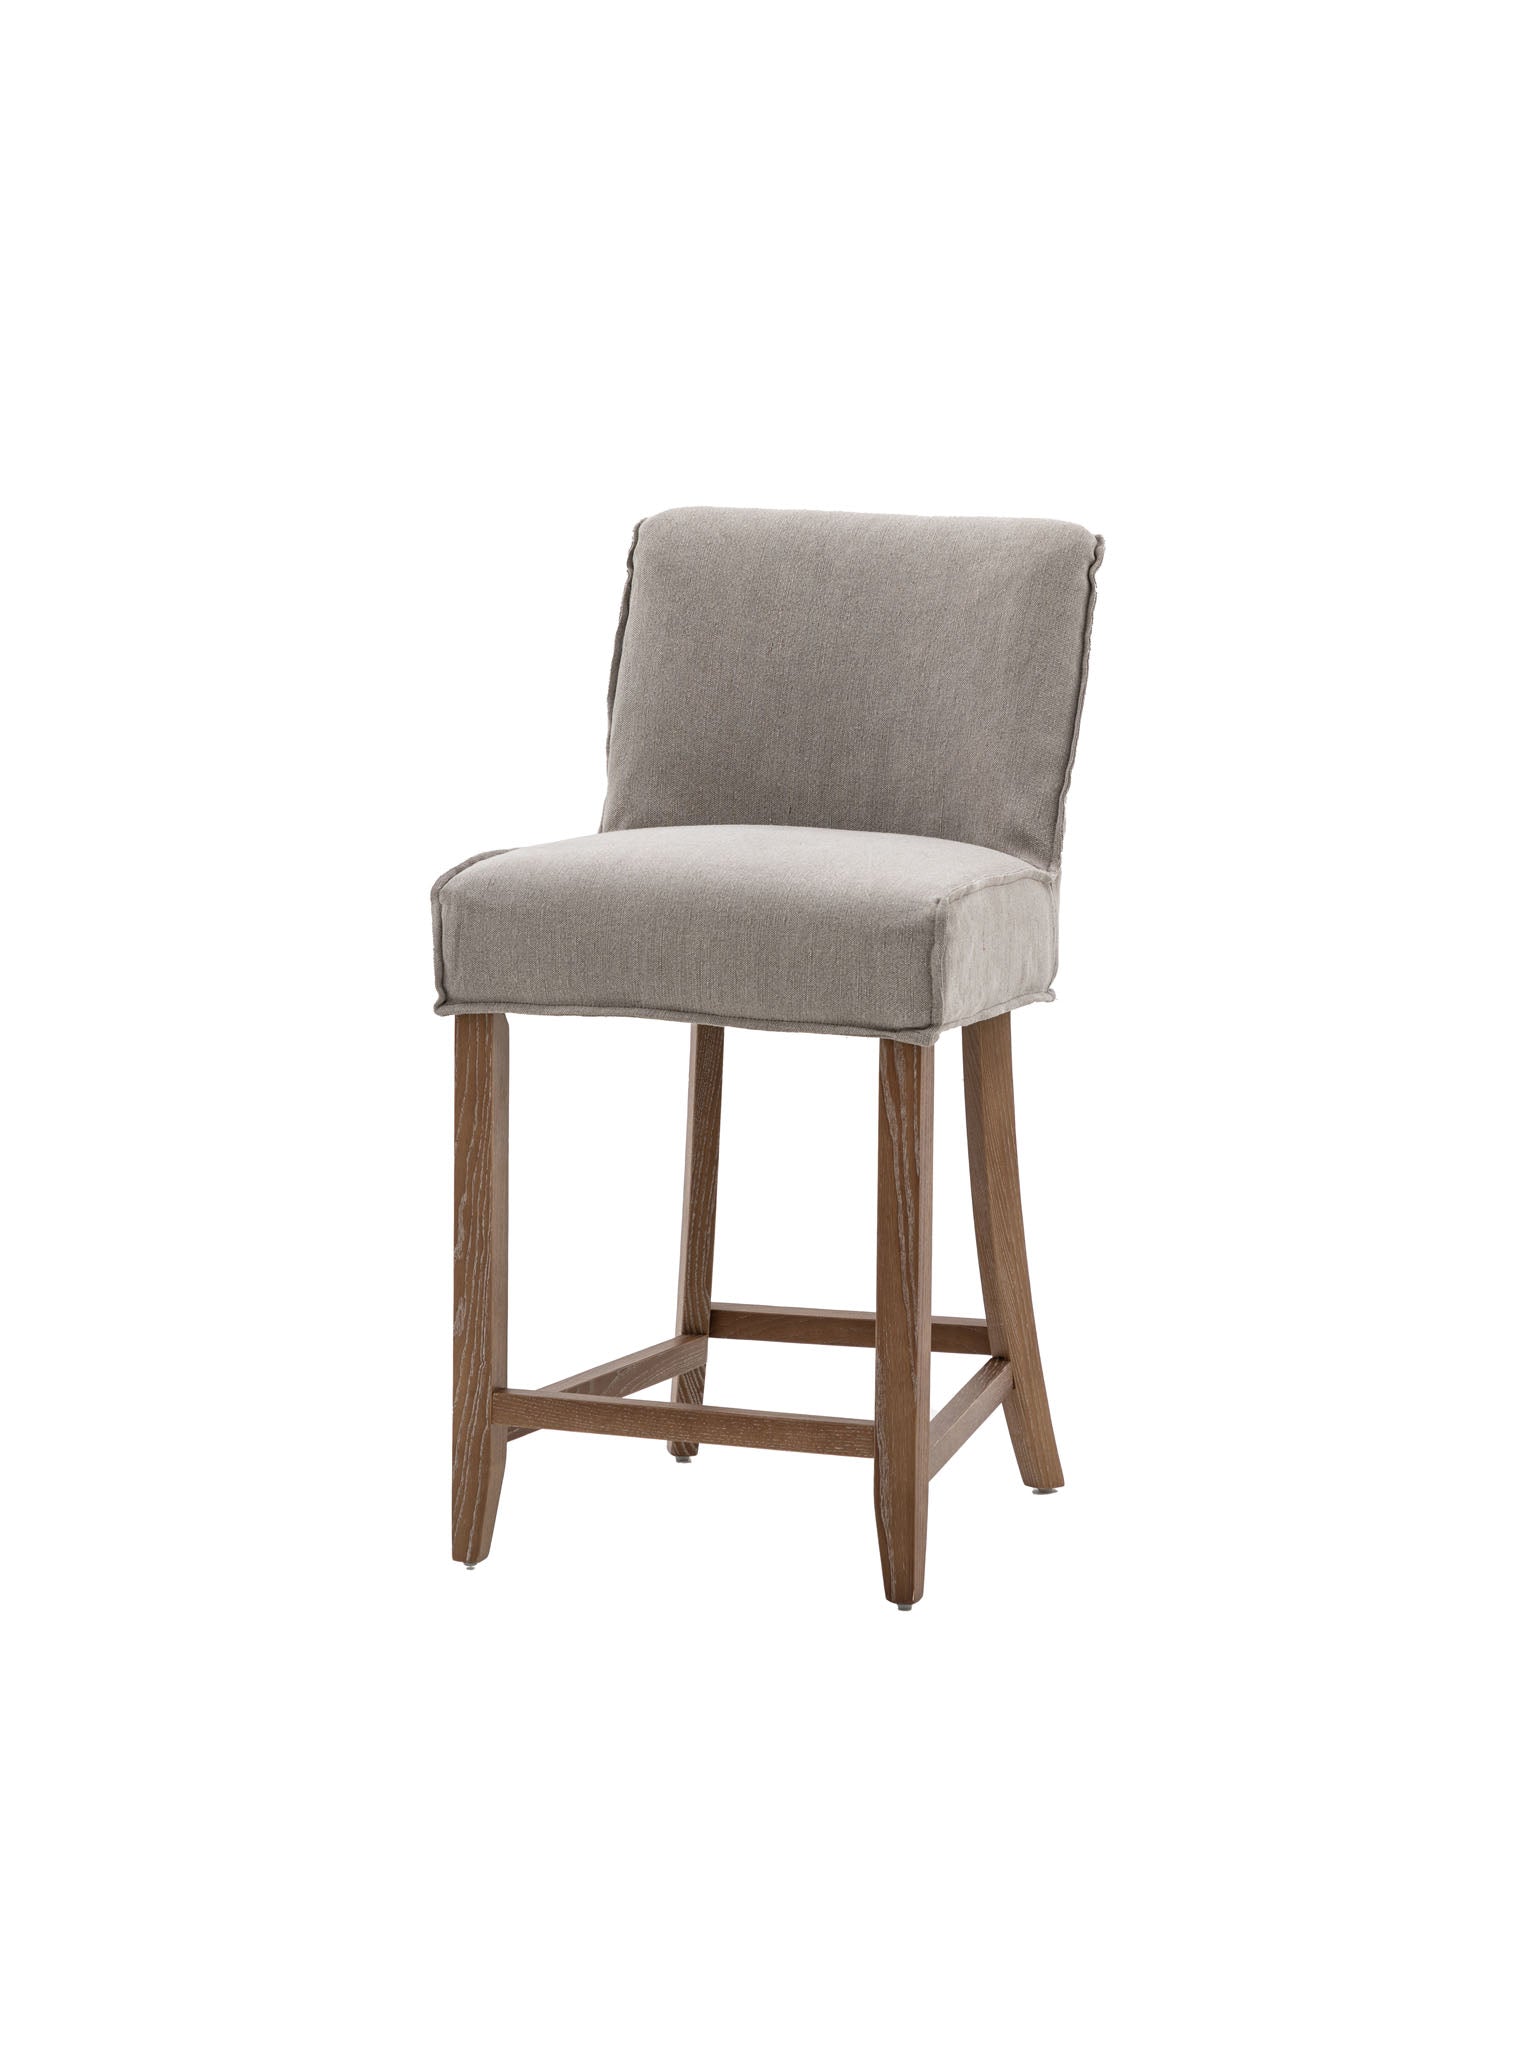 Grey linen bar stool with oak wooden legs